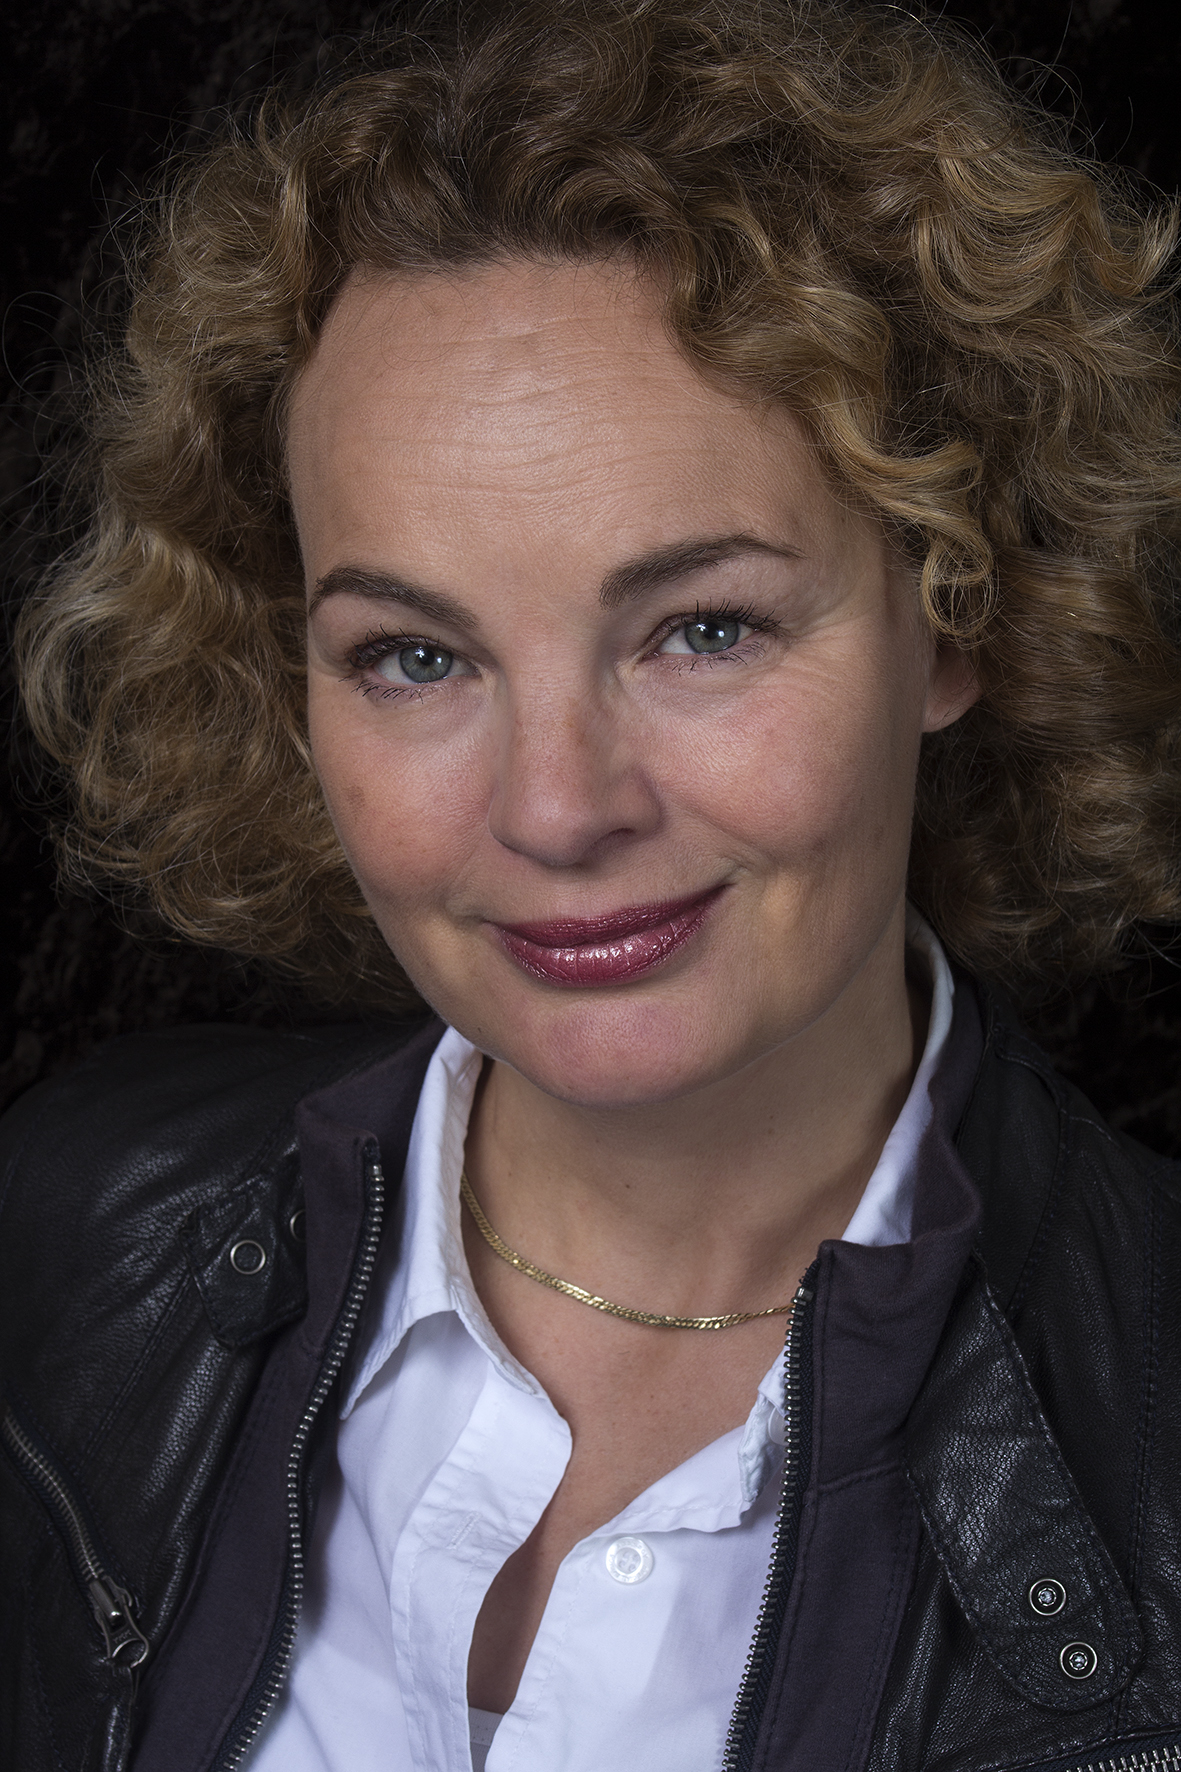 prof. dr. A. (Annet) van Royen-Kerkhof 